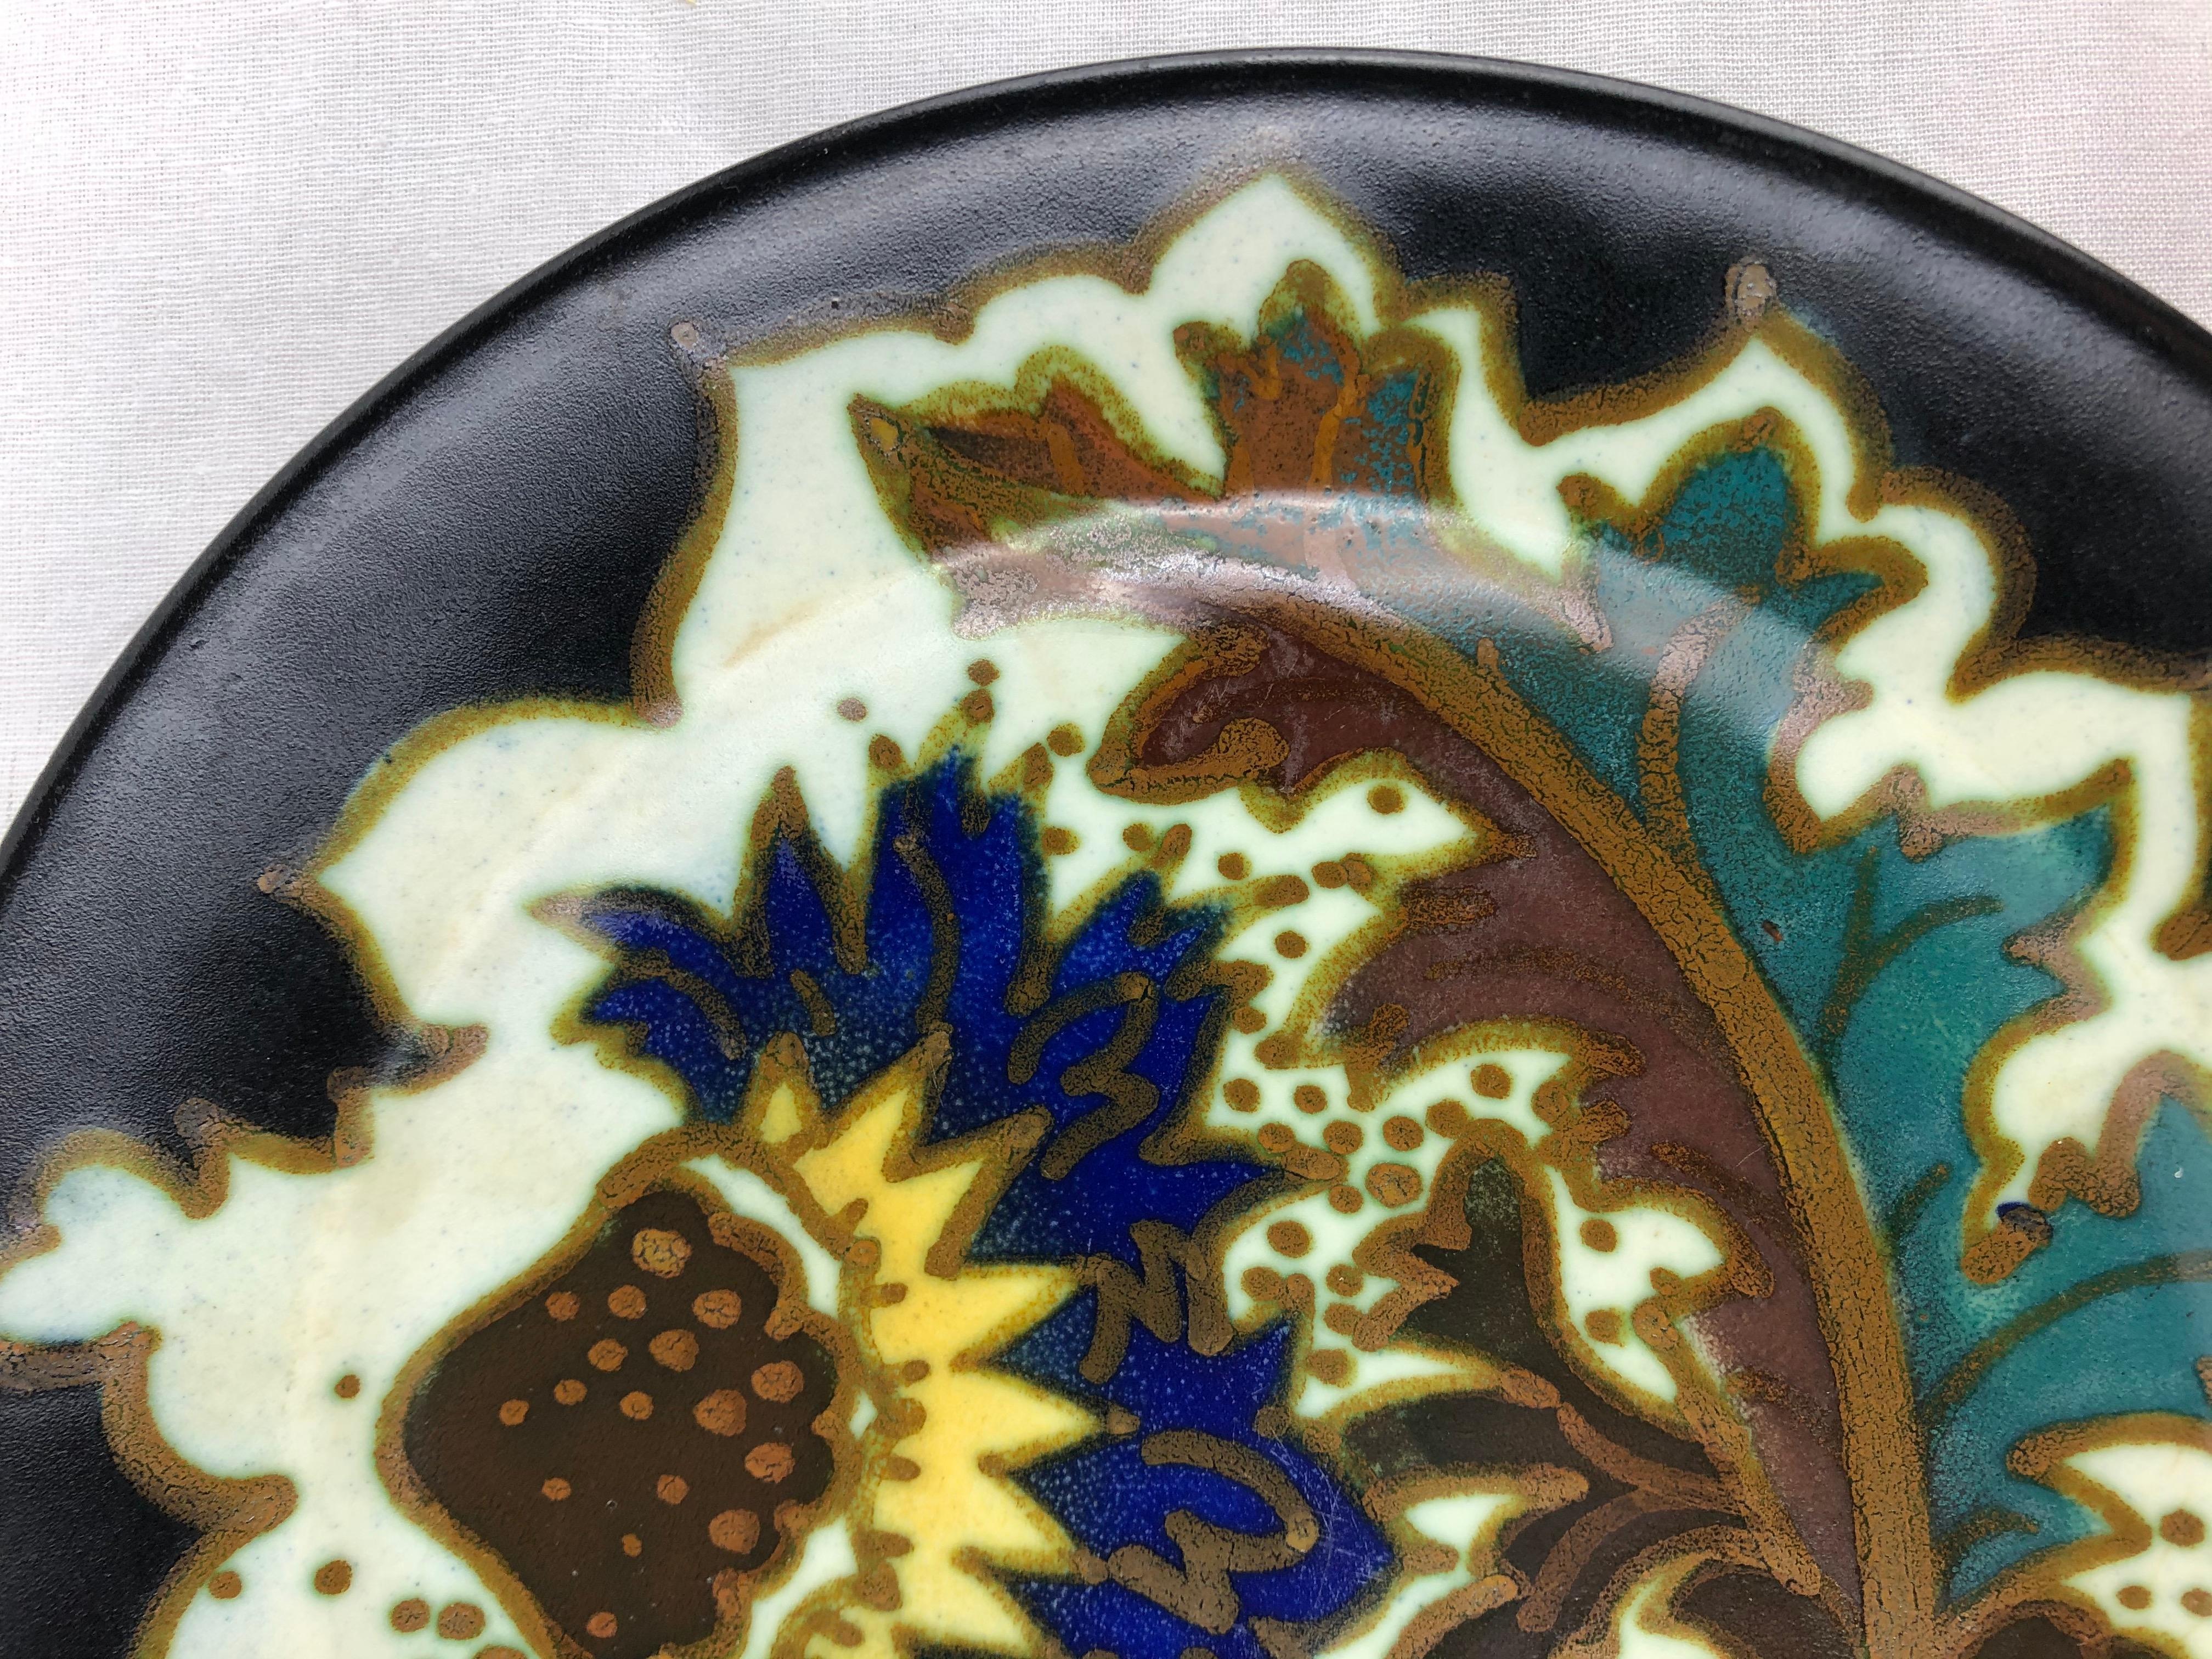 Niederländische Art-Deco-Keramikschüssel aus Gouda, Holland, mit traditionellen, blumigen und geschwungenen Mustern, um 1920, matte Glasur, die für uns eine Mischung aus abstrakten und floralen Mustern darstellt.

Sehr farbenfroh und ansprechend